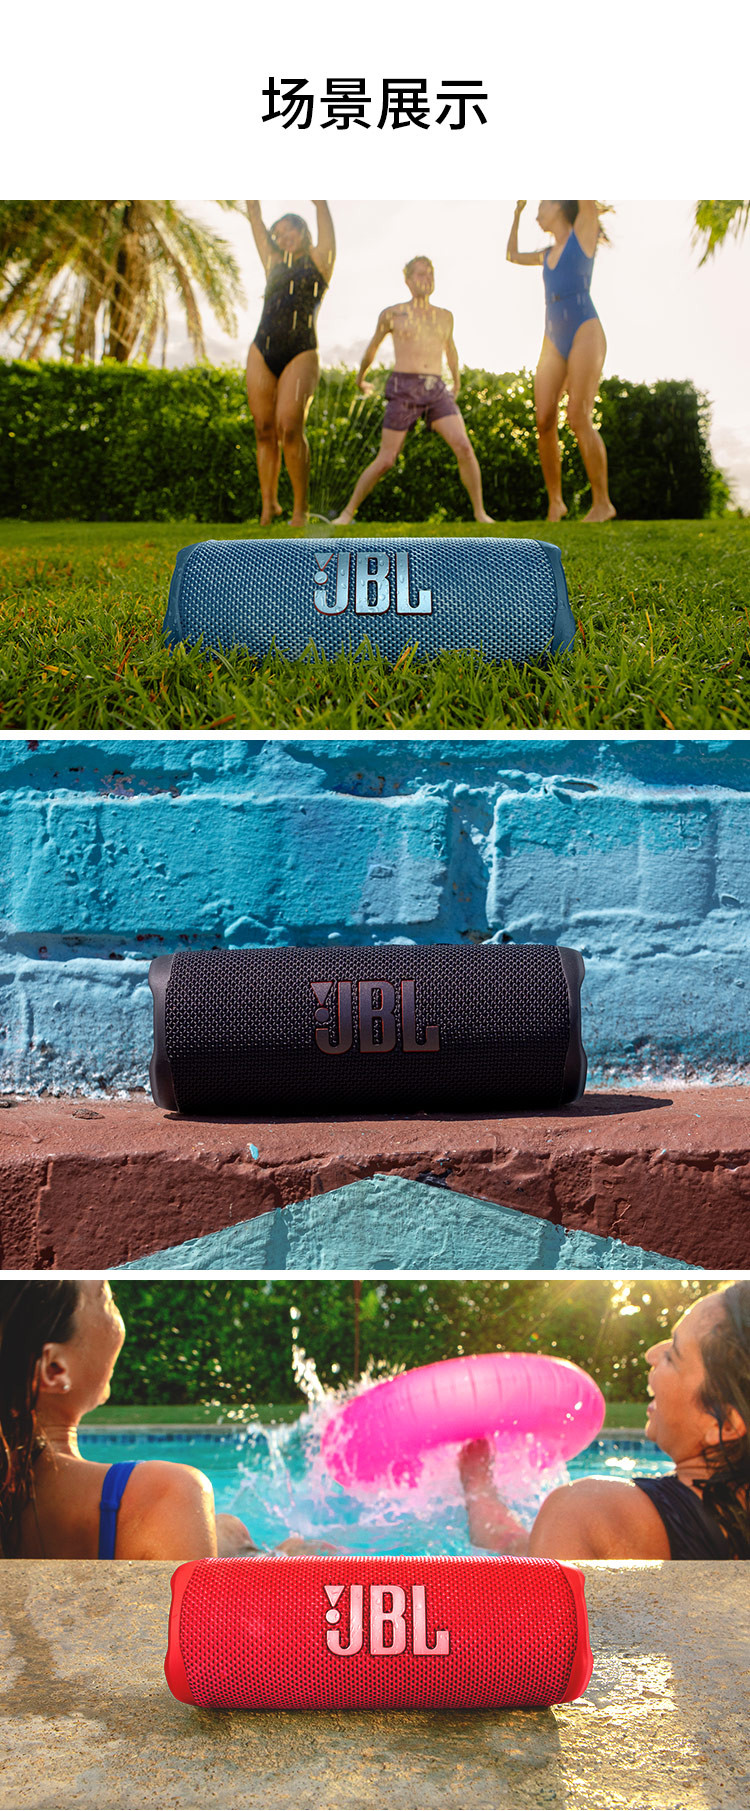 JBL FLIP6 音乐万花筒六代 便携式蓝牙音箱 低音炮 防水防尘设计 多台串联 赛道扬声器